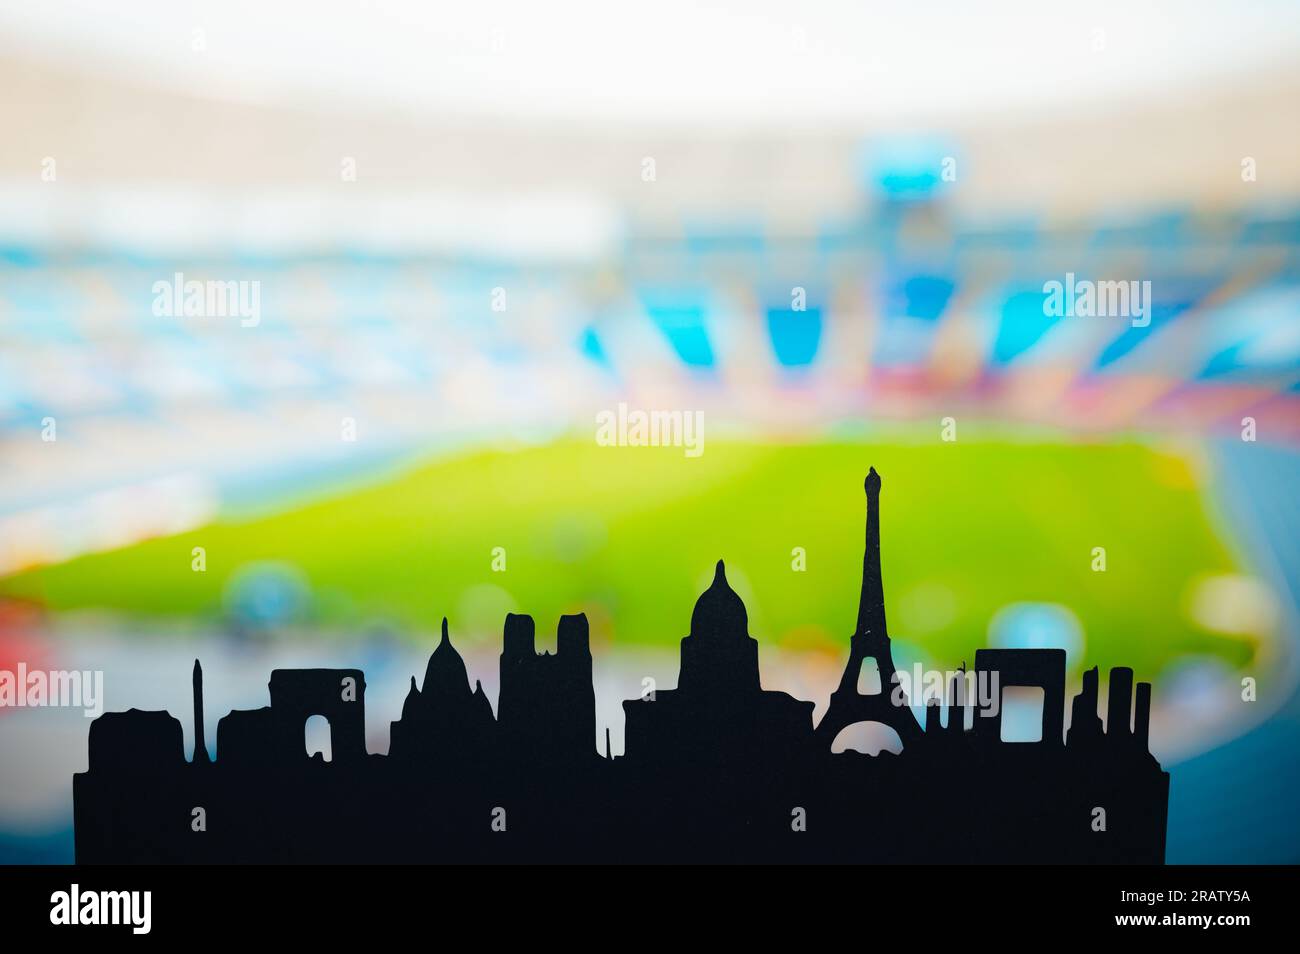 París desvelado: Silueta de los emblemáticos monumentos de la ciudad, detrás de un moderno estadio deportivo. Una instantánea para los Juegos de Verano de 2024 en París Foto de stock